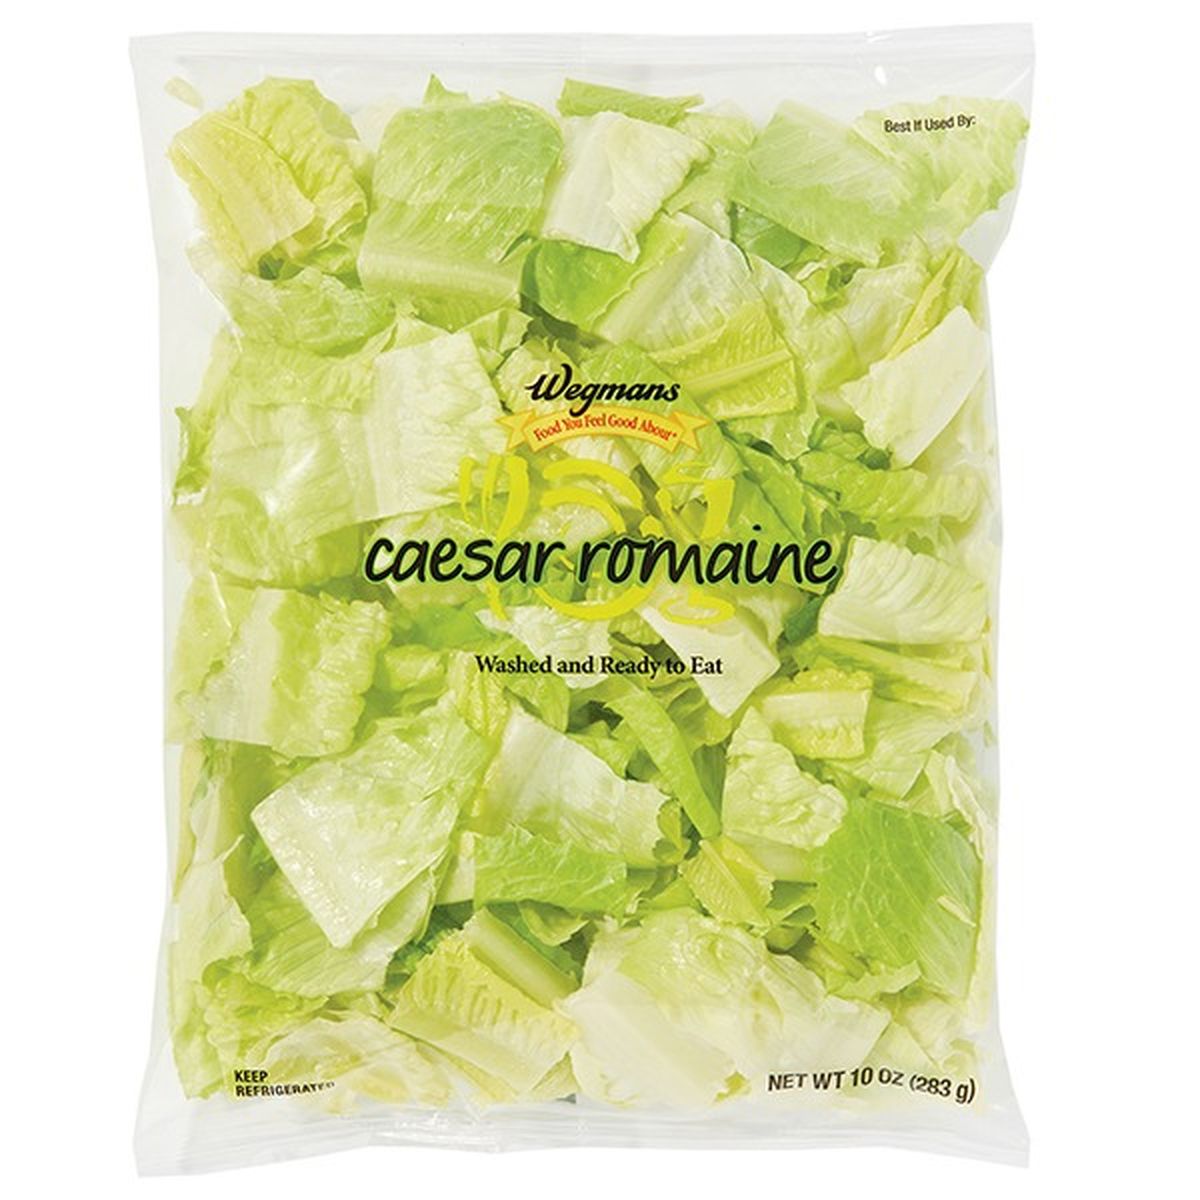 Calories in Wegmans Caesar Romaine